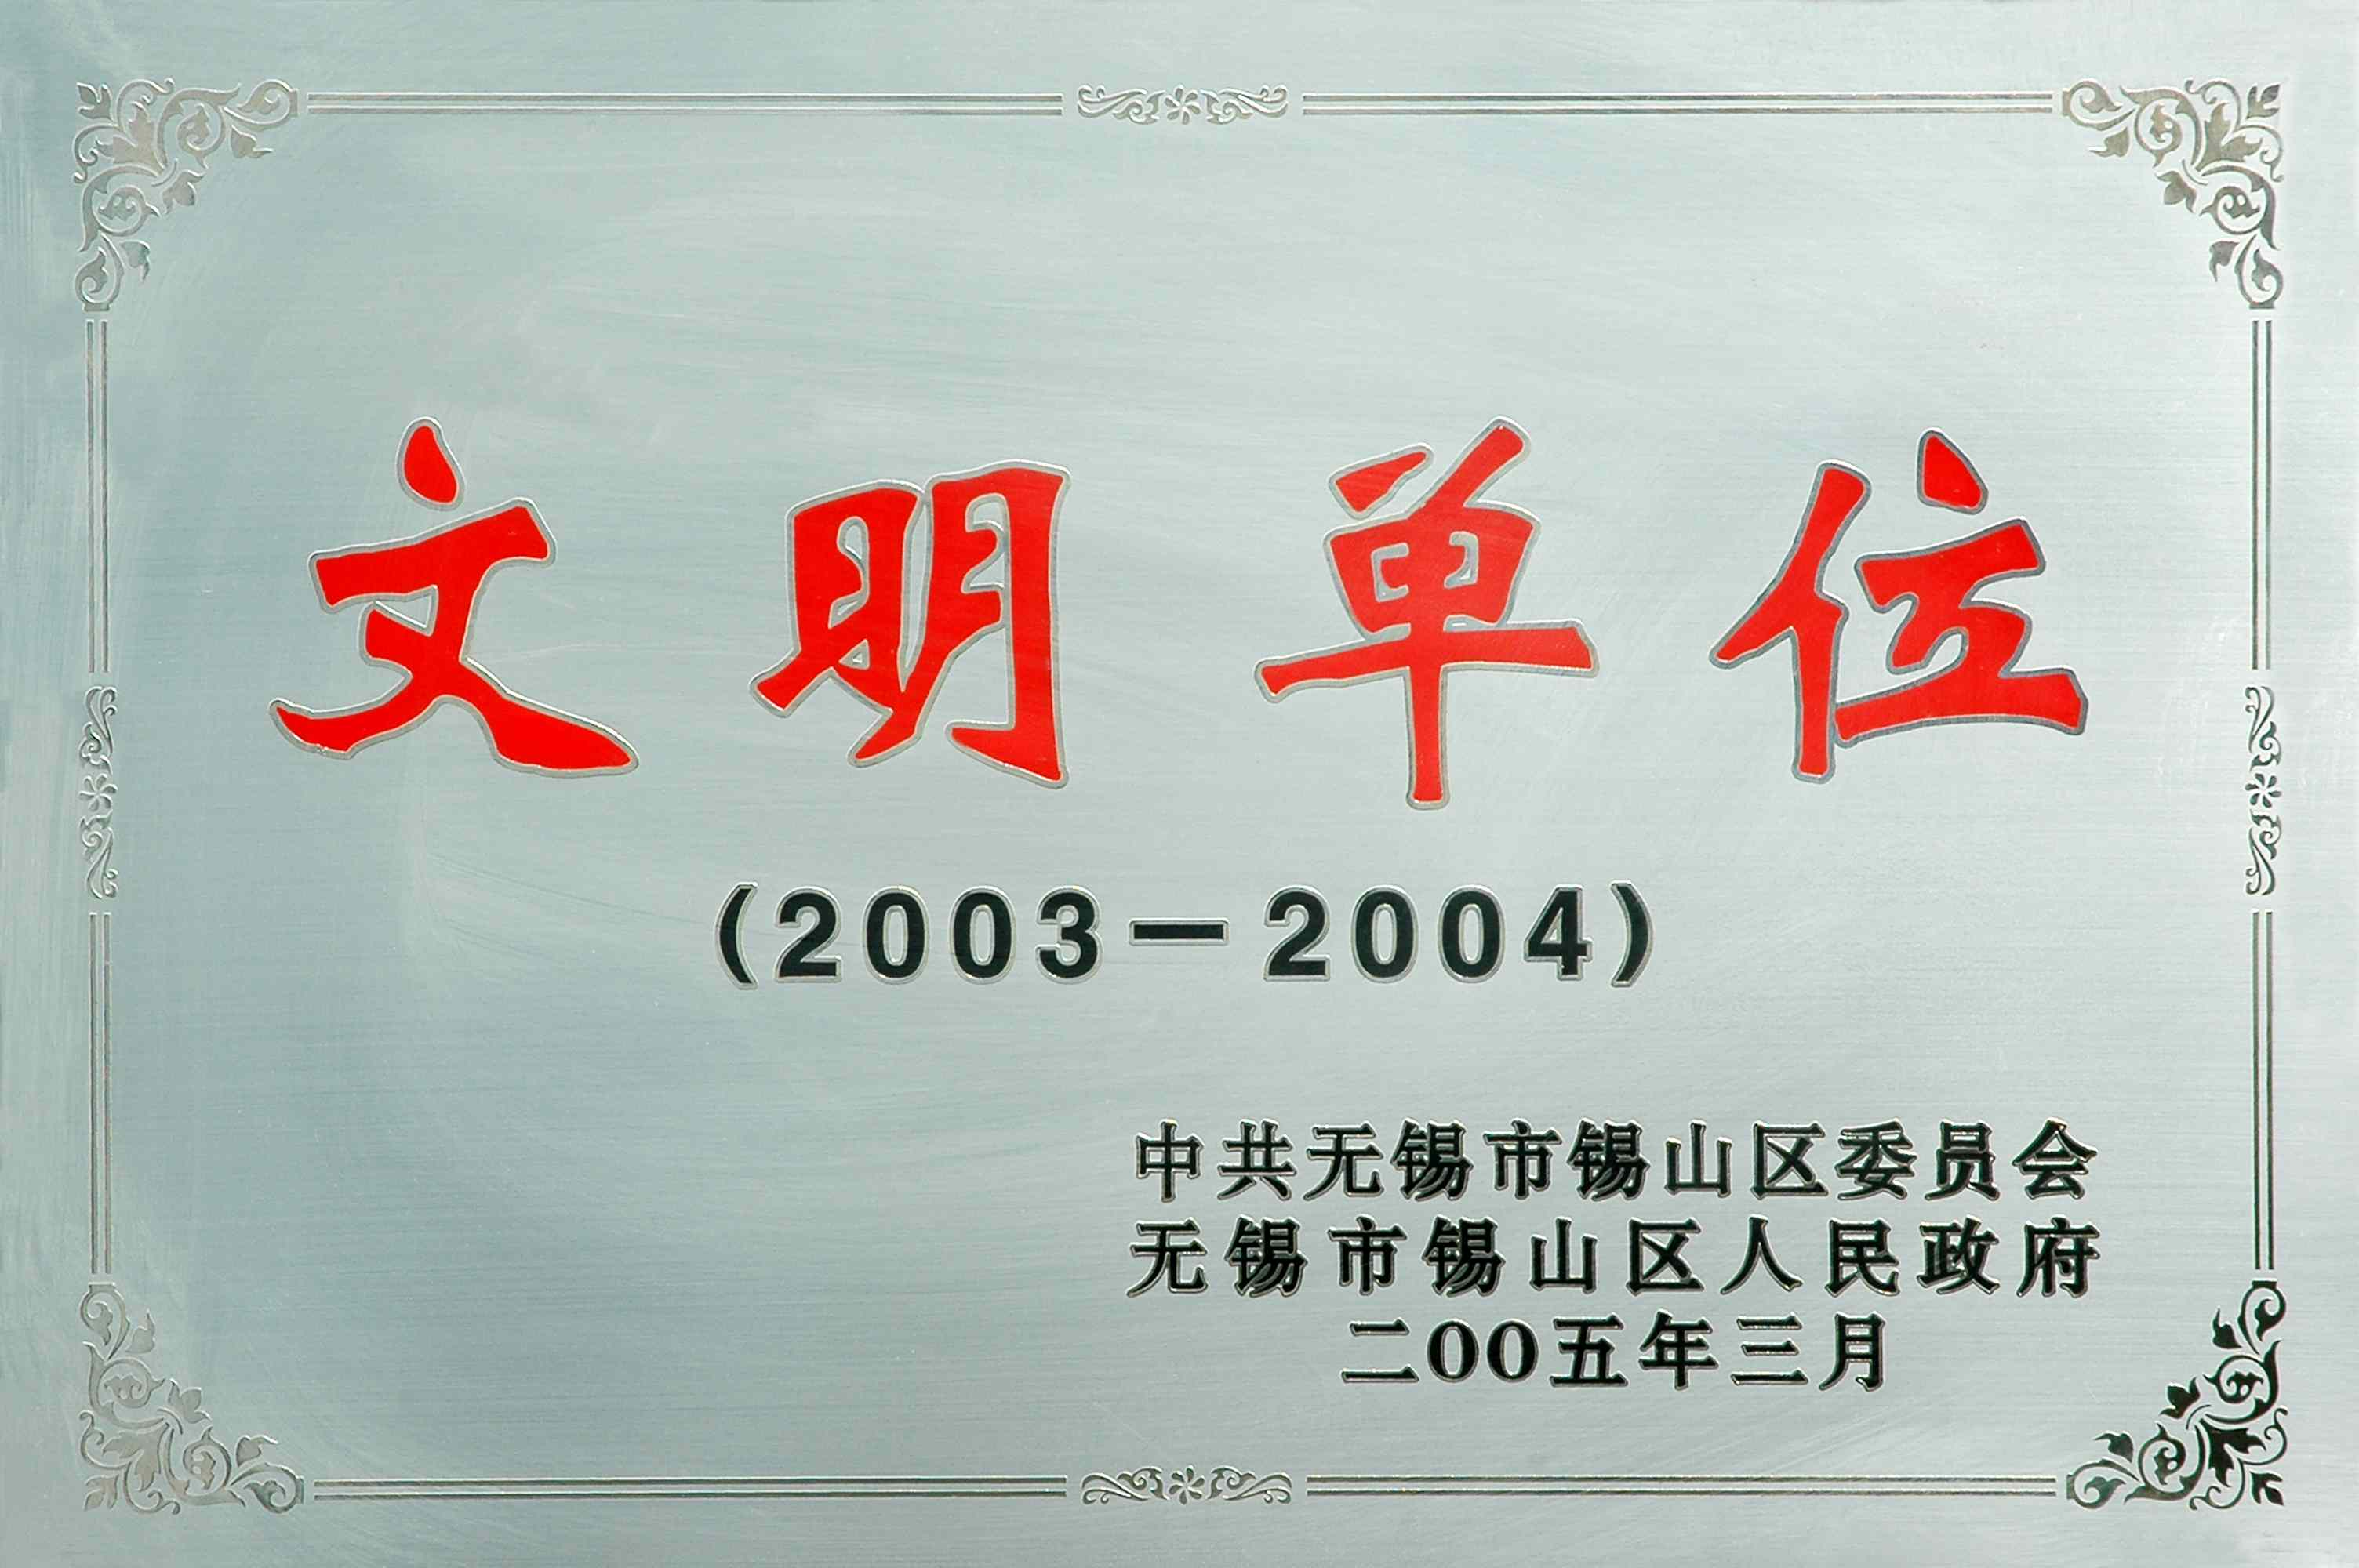 2003-2004年锡山区文明单位